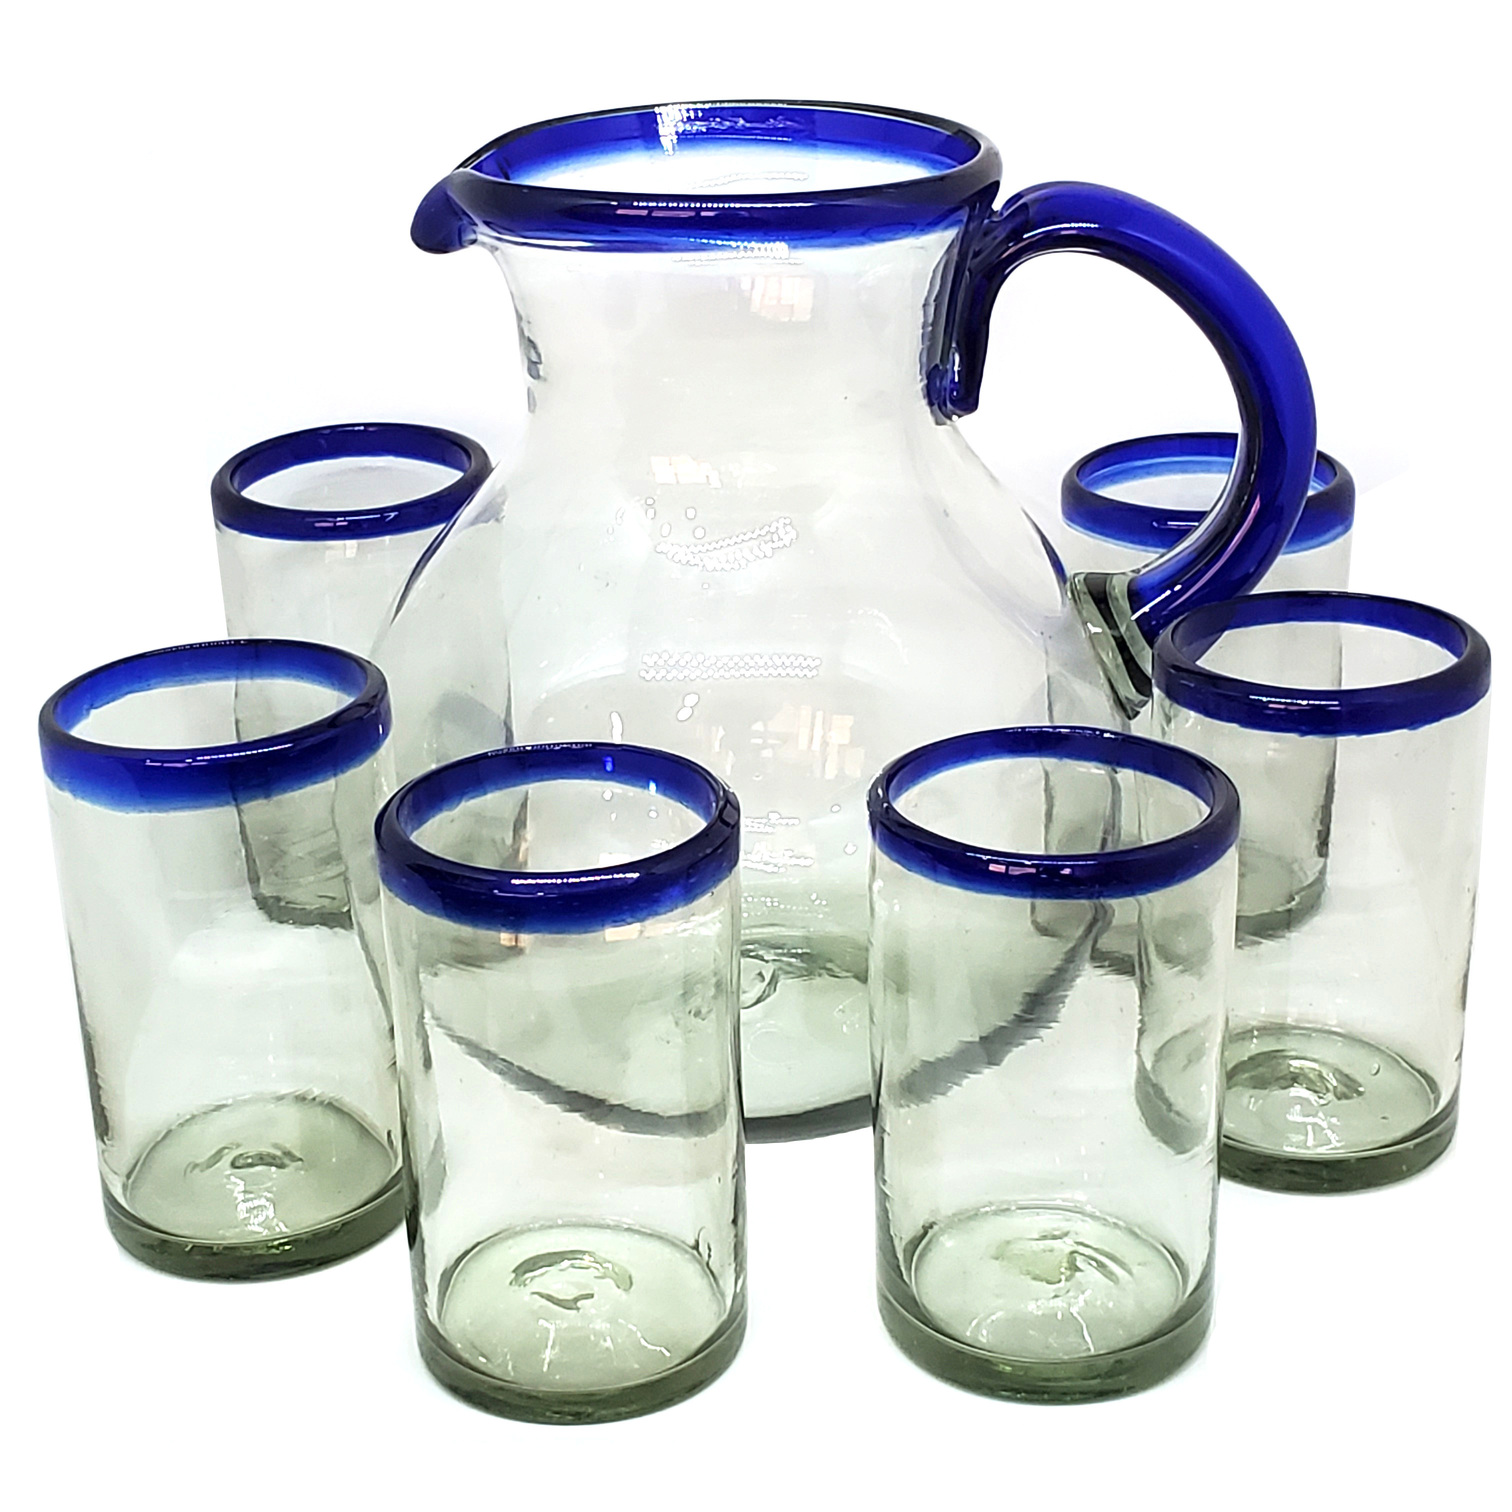 VIDRIO SOPLADO / Juego de jarra y 6 vasos grandes con borde azul cobalto, 120 oz, Vidrio Reciclado, Libre de Plomo y Toxinas